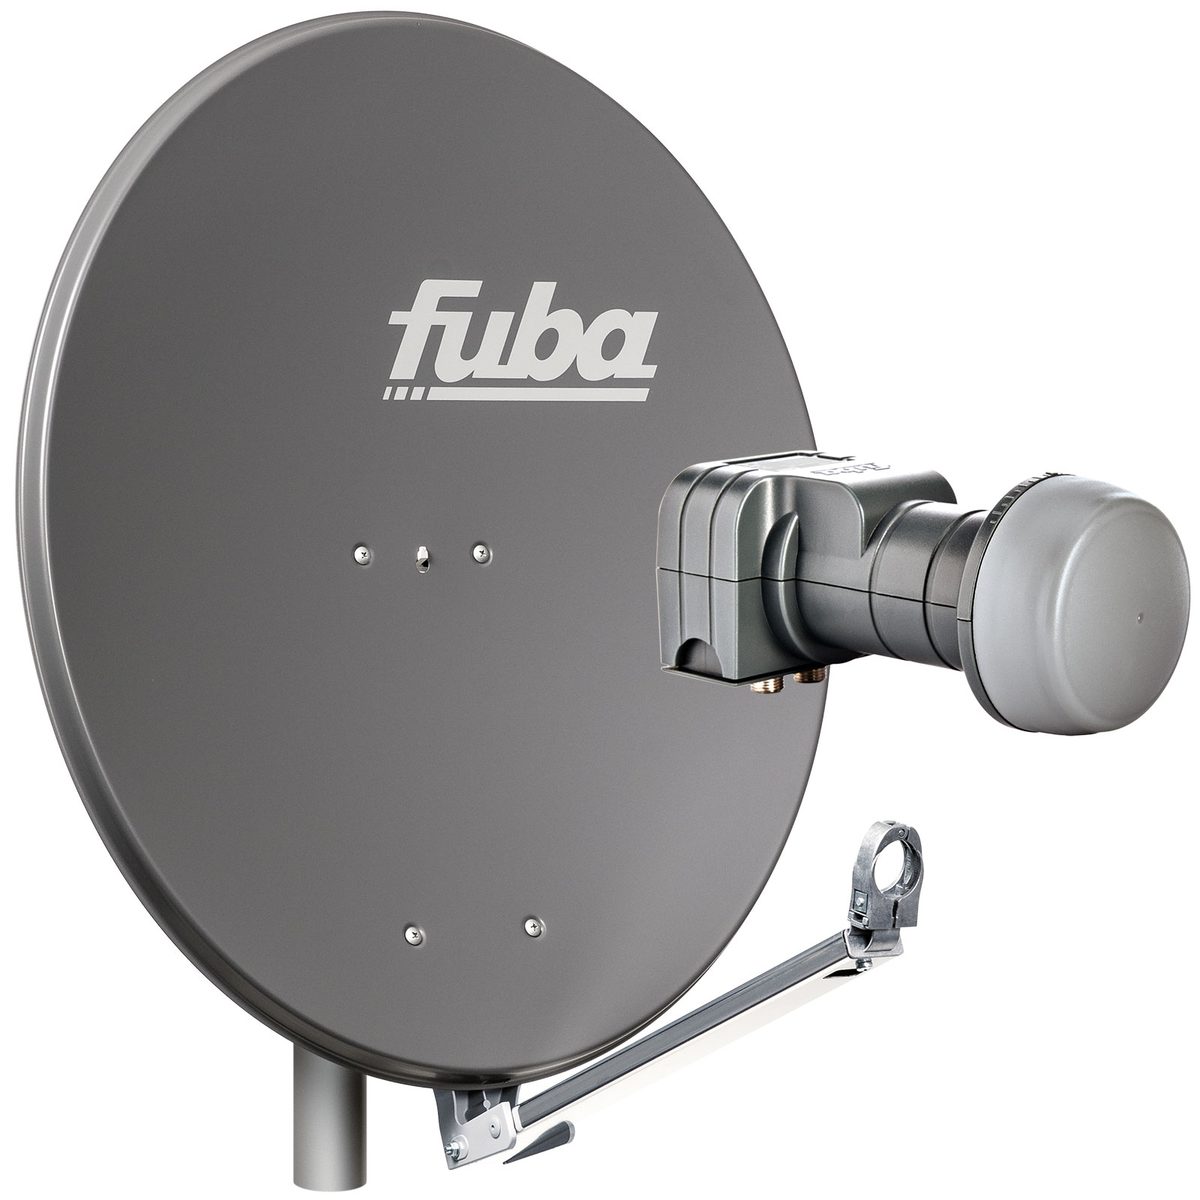 Fuba 2 Teilnehmer Sat Anlage DAL 802 A | Satelliten Komplettanlage mit Fuba DAL 800 A Alu Sat-Schüssel/Sat-Spiegel anthrazit + Fuba DEK 217 Twin LNB für 2 Receiver/Teilnehmer (HDTV-, 4K- und 3D-kompatibel)